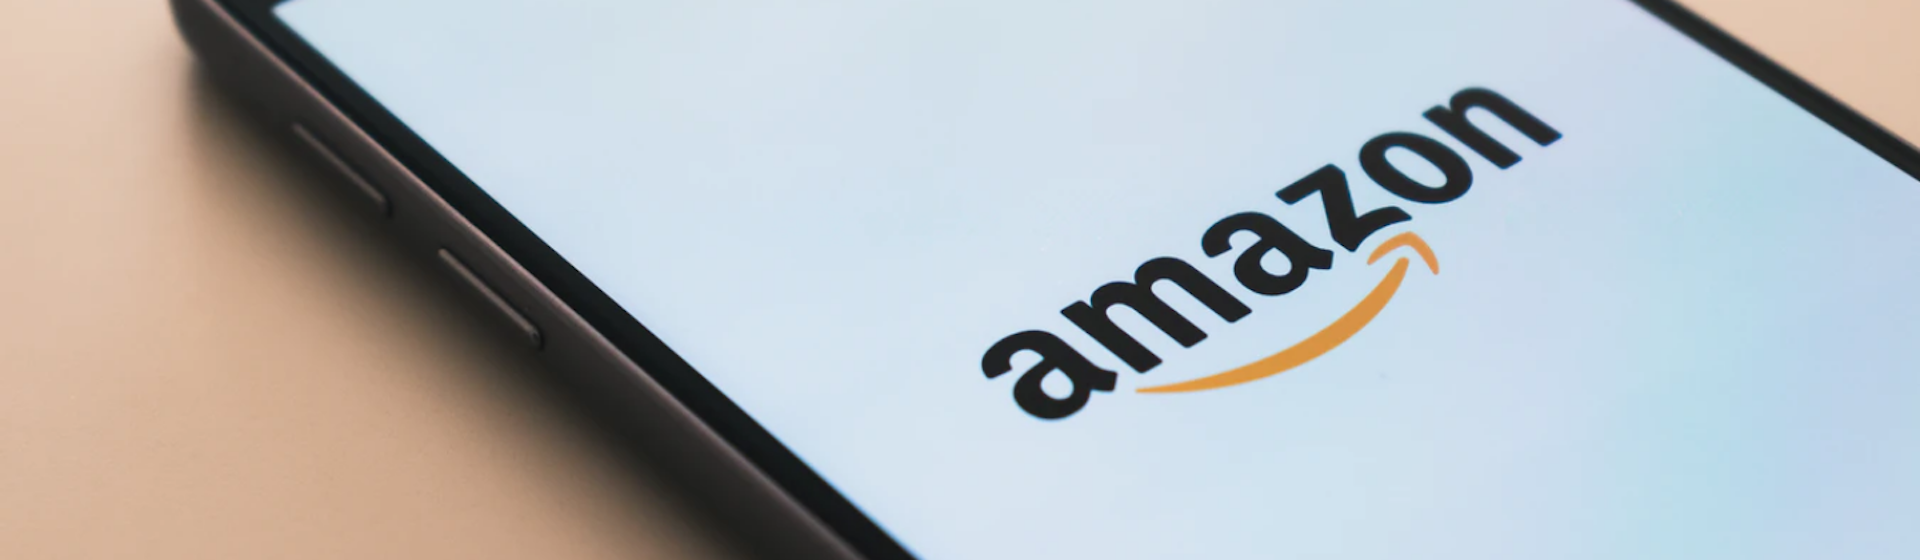 Caso de éxito de Amazon y Big Data: el comportamiento de compra bajo la lupa